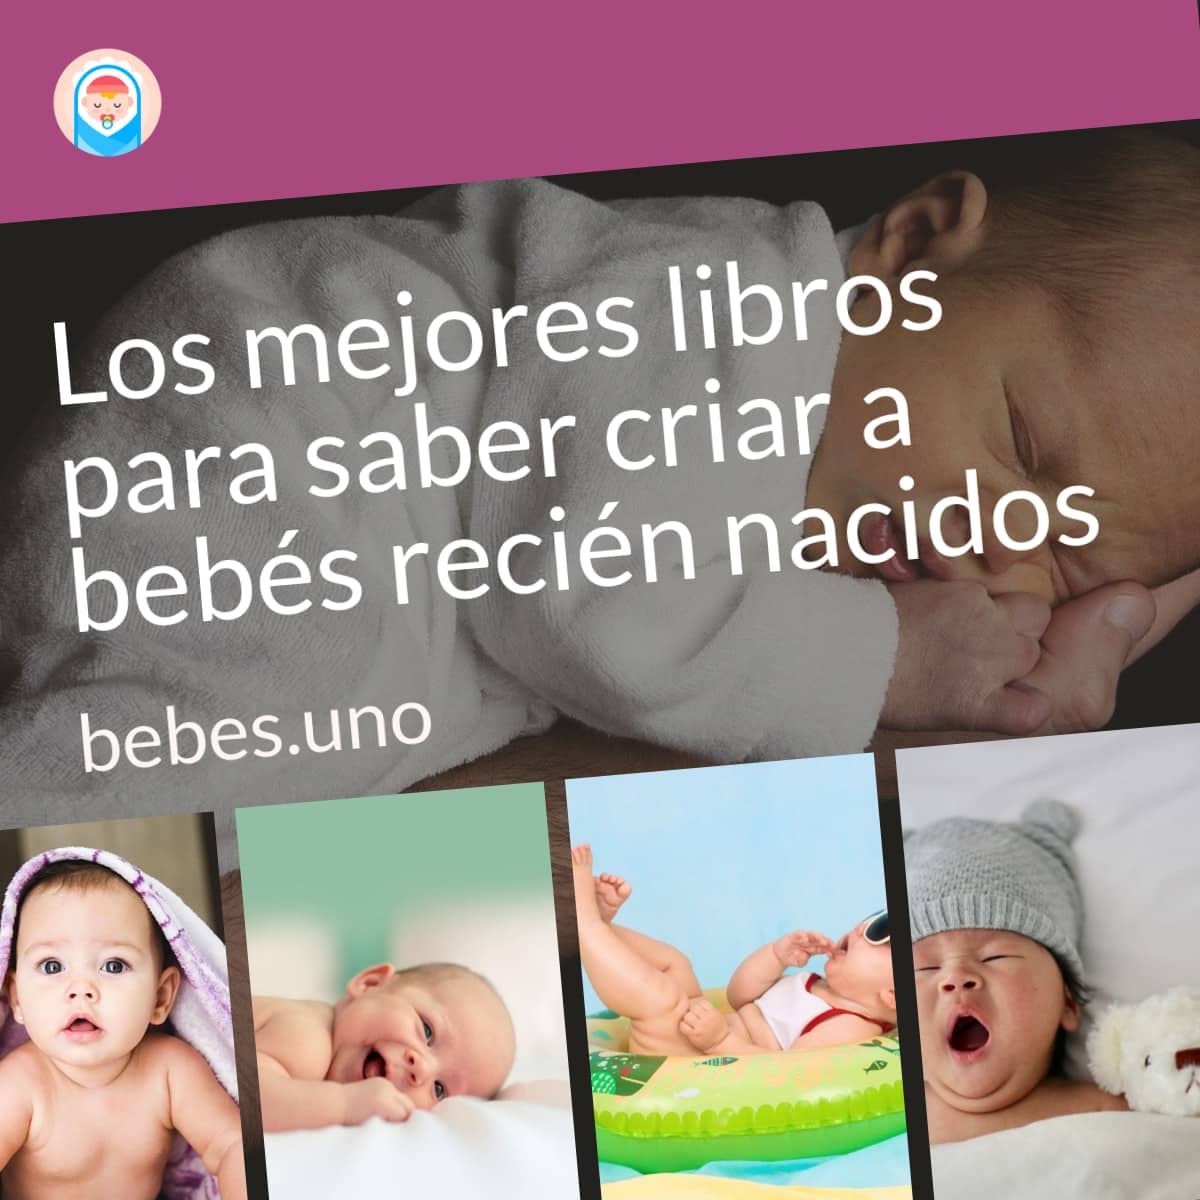 Los mejores libros para saber criar a bebés recién nacidos